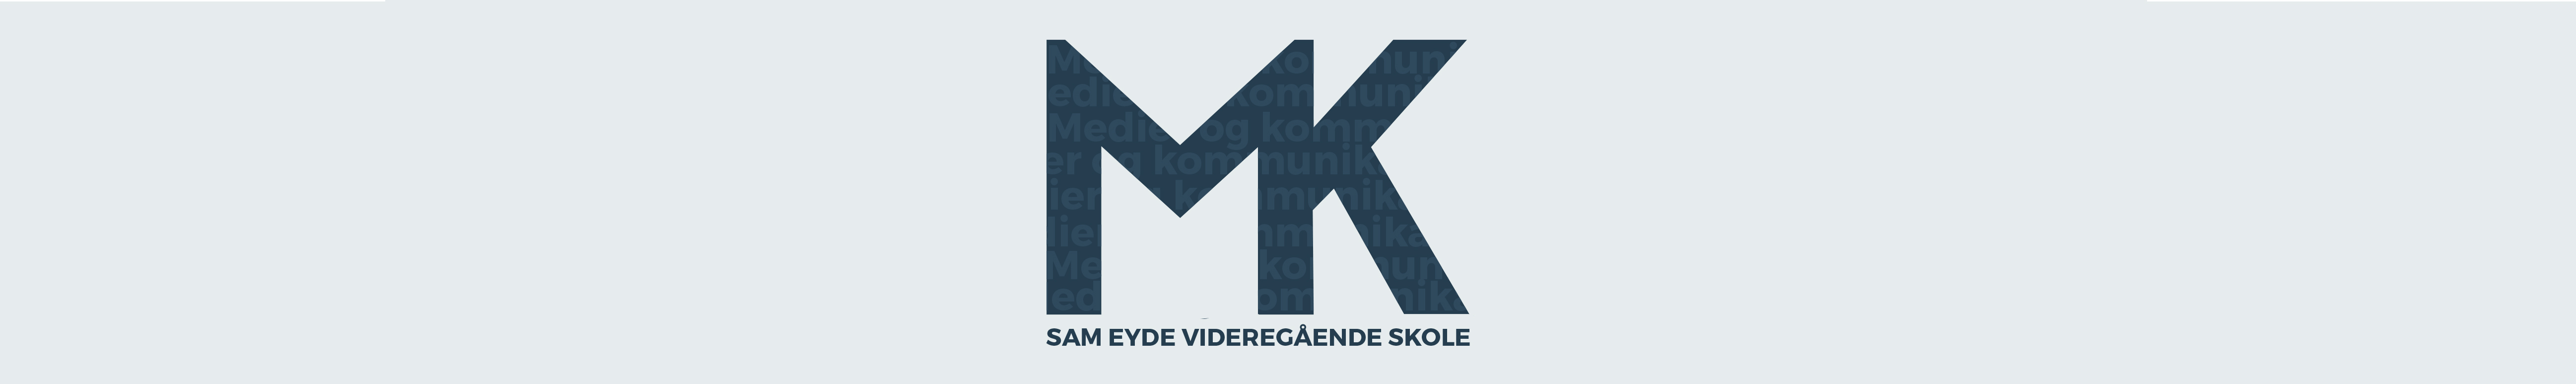 MK Sam Eyde